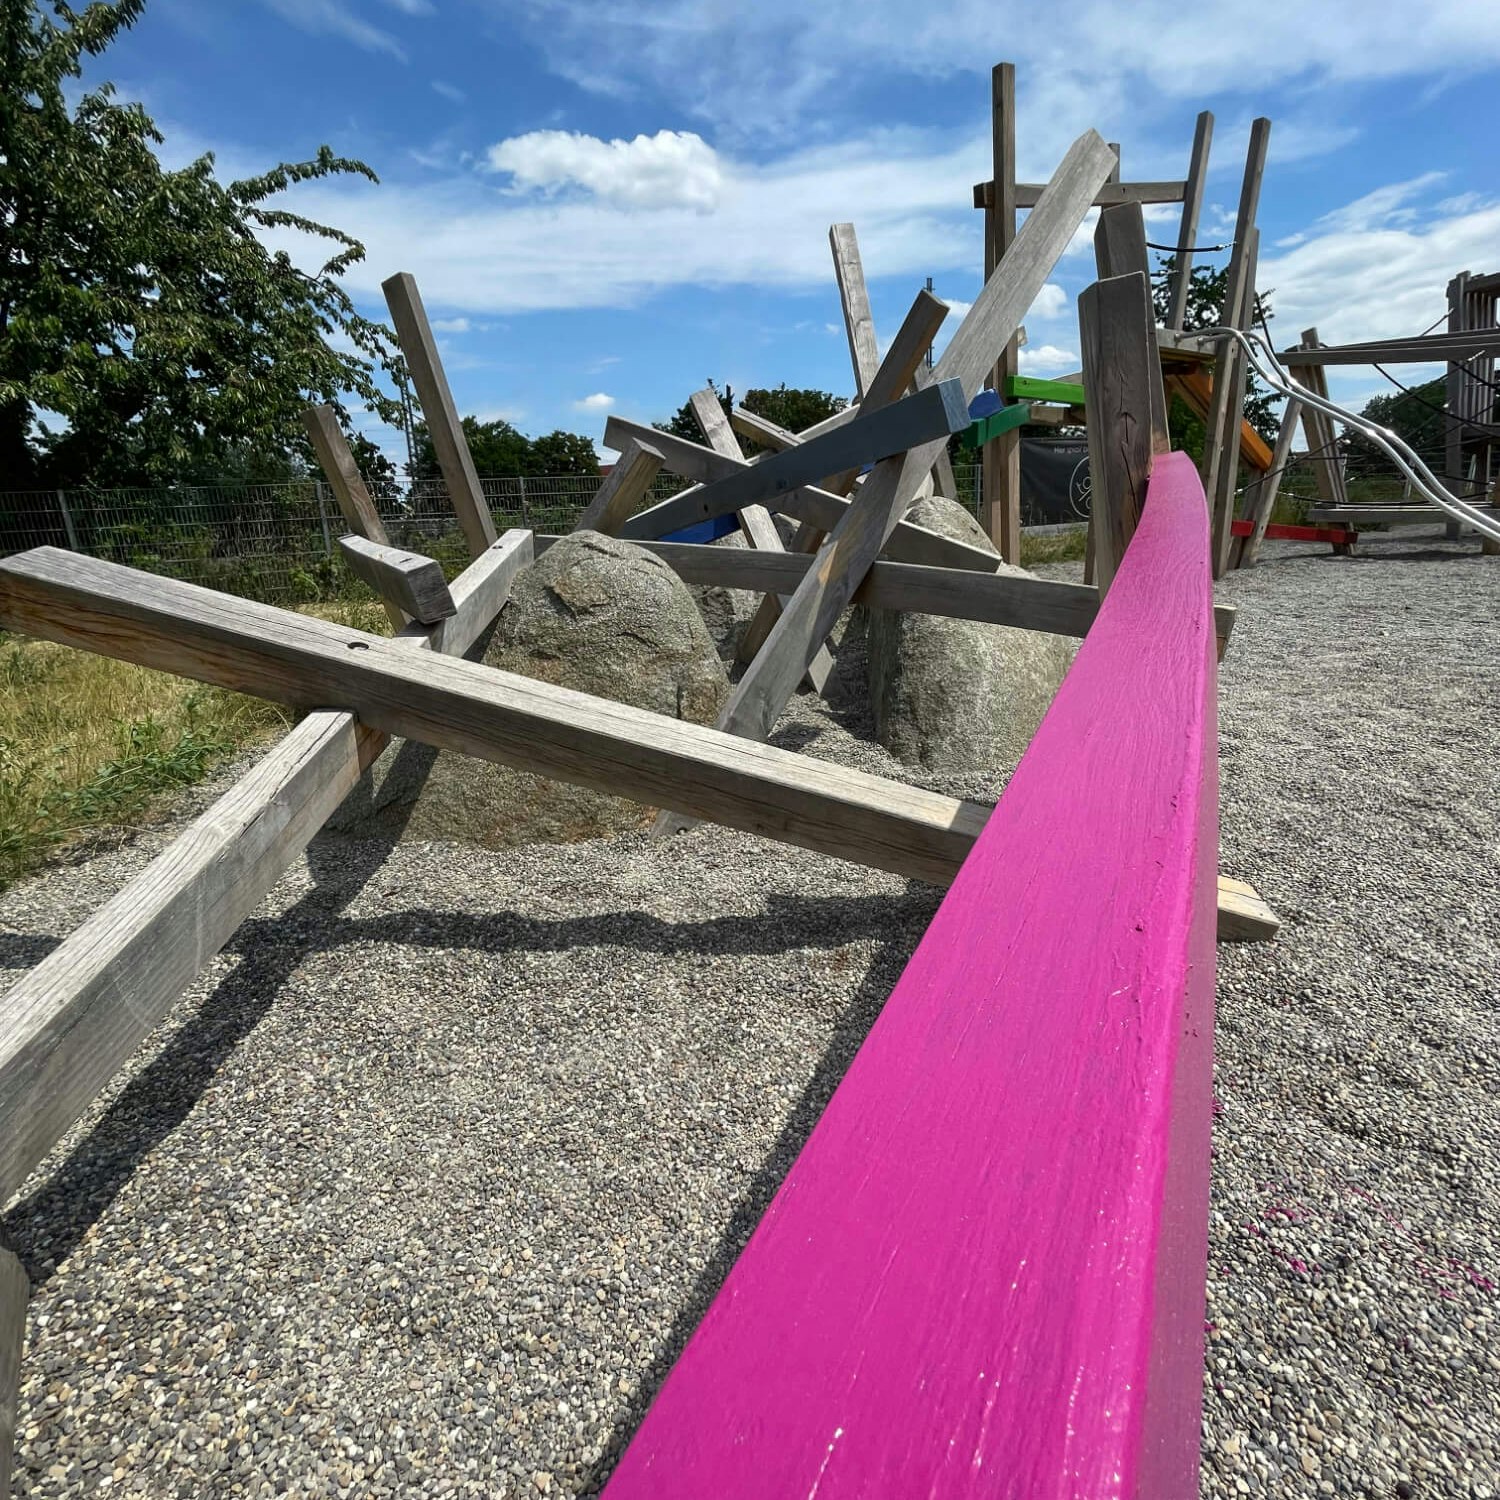 Detailaufnahme eines Kies-Spielplatzes mit einem frisch in Pink gestrichenen Holzbalken im Vordergrund. Dahinter sind diverse Holzkonstruktionen, Steine und Spielgeräte zu erkennen, alles unter einem klaren blauen Himmel.